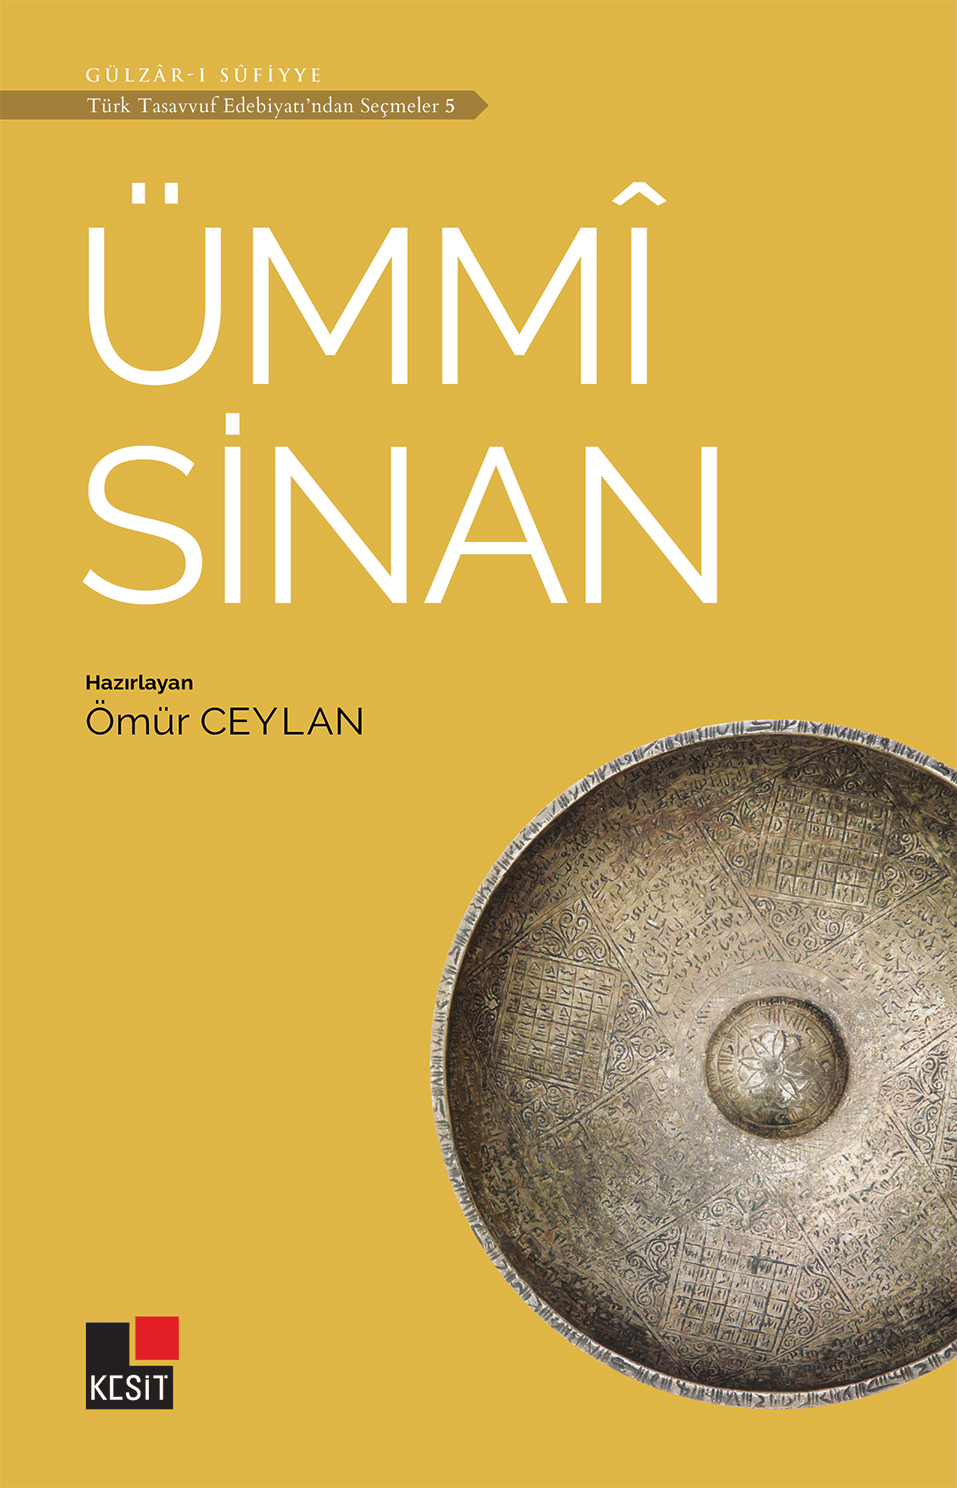 Ümmî Sinan / Türk tasavvuf edebiyatından seçmeler 5